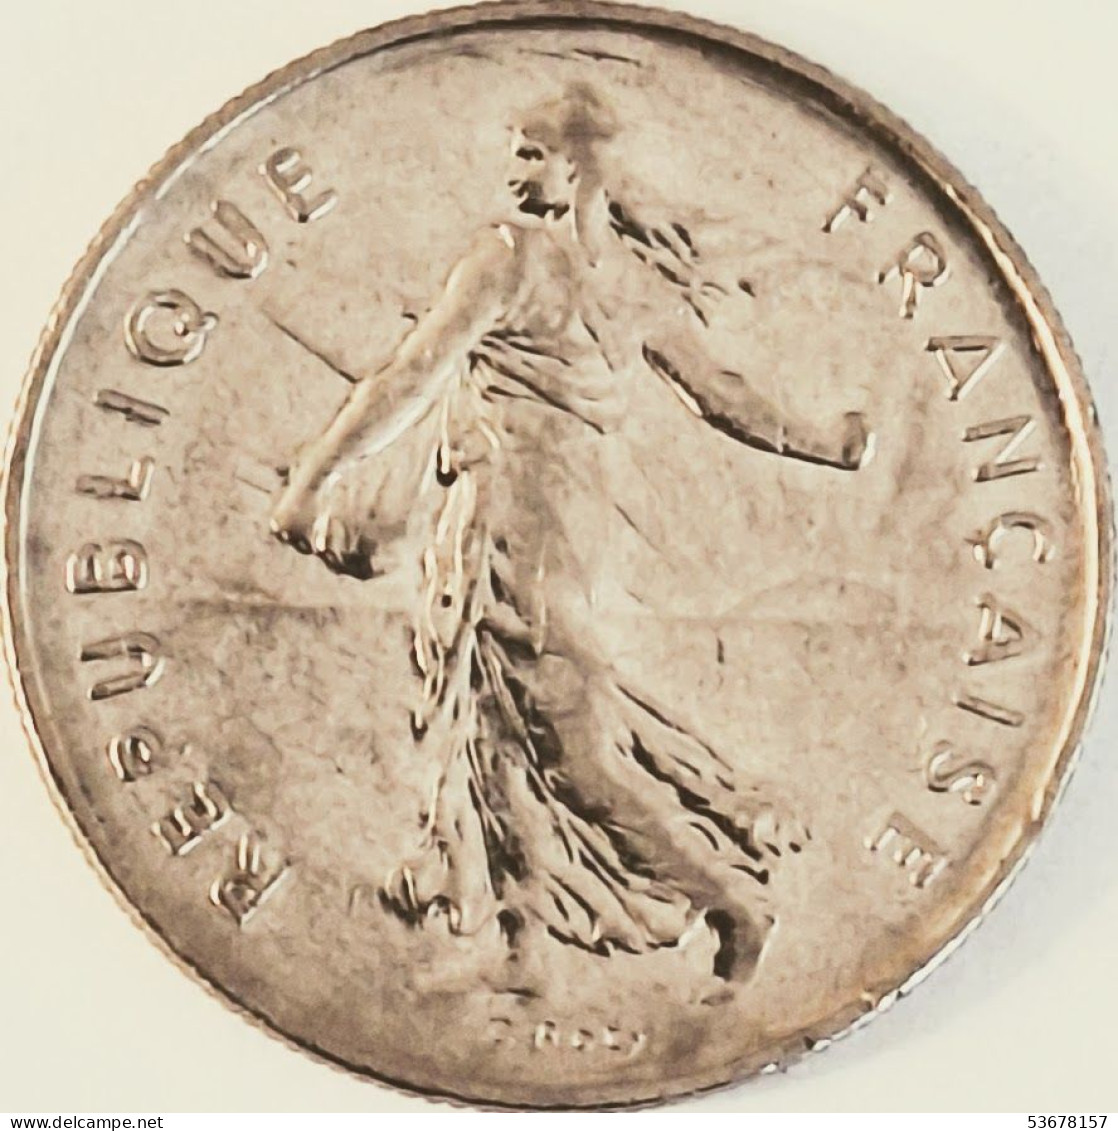 France - 5 Francs 1991, KM# 926a.1 (#4343) - 5 Francs